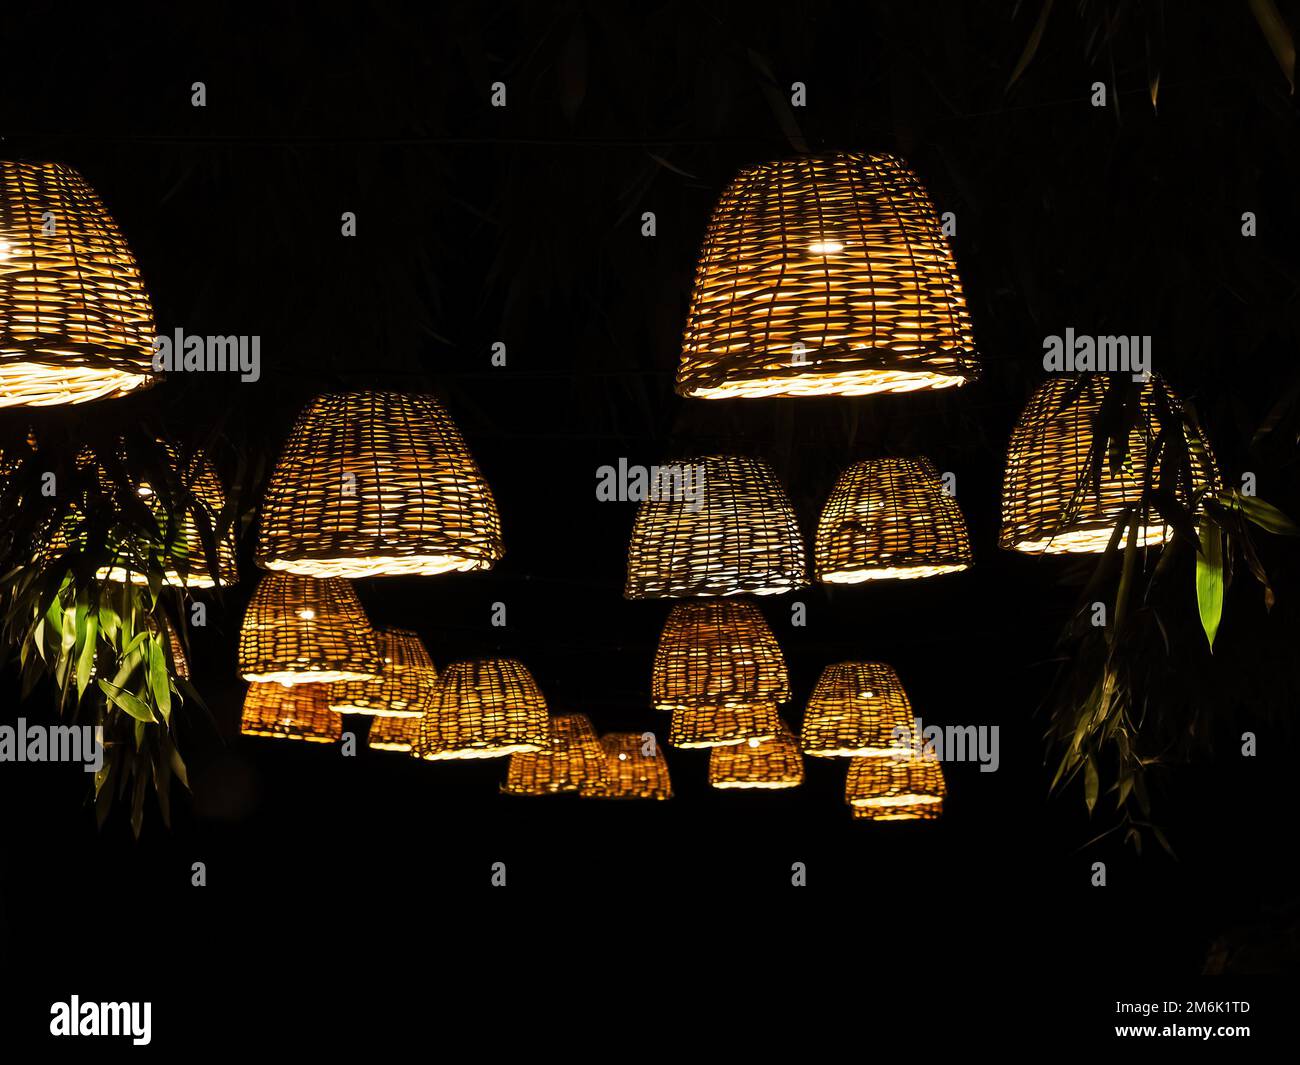 Viele Lampen mit Korblampenschirmen hängen in einem dunklen Bambuspark. Stockfoto